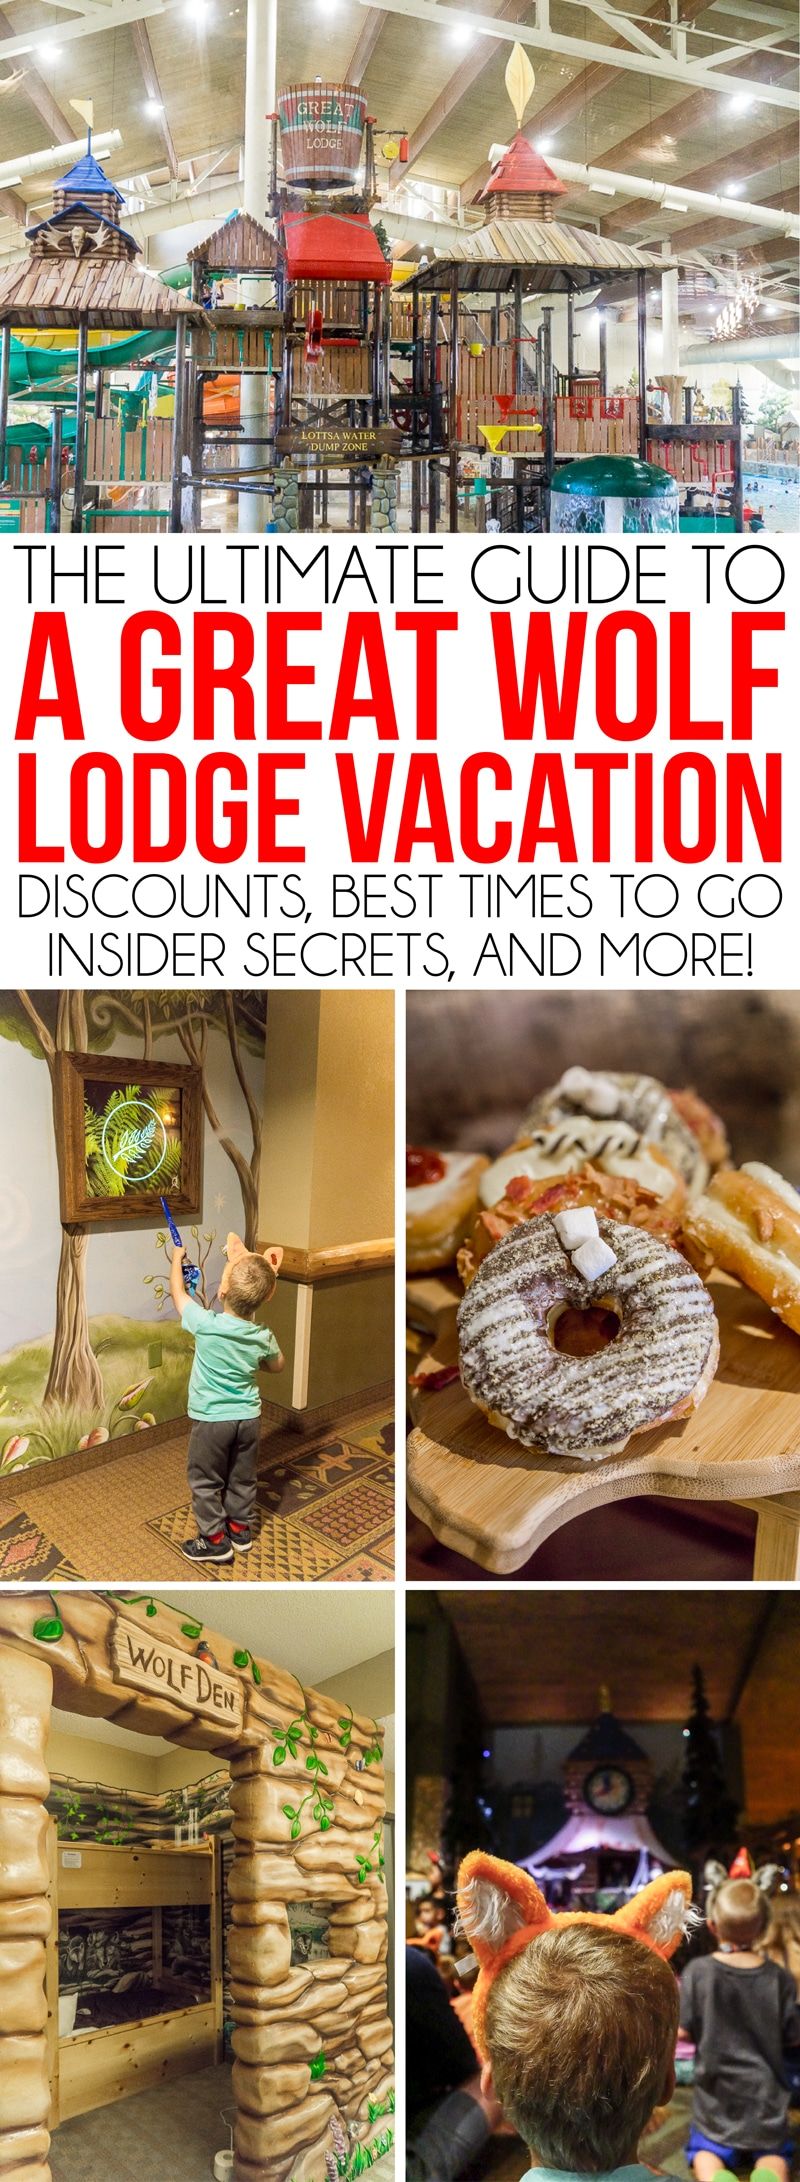 Great Wolf Lodge Grapevine és ideal per a famílies amb nens de totes les edats